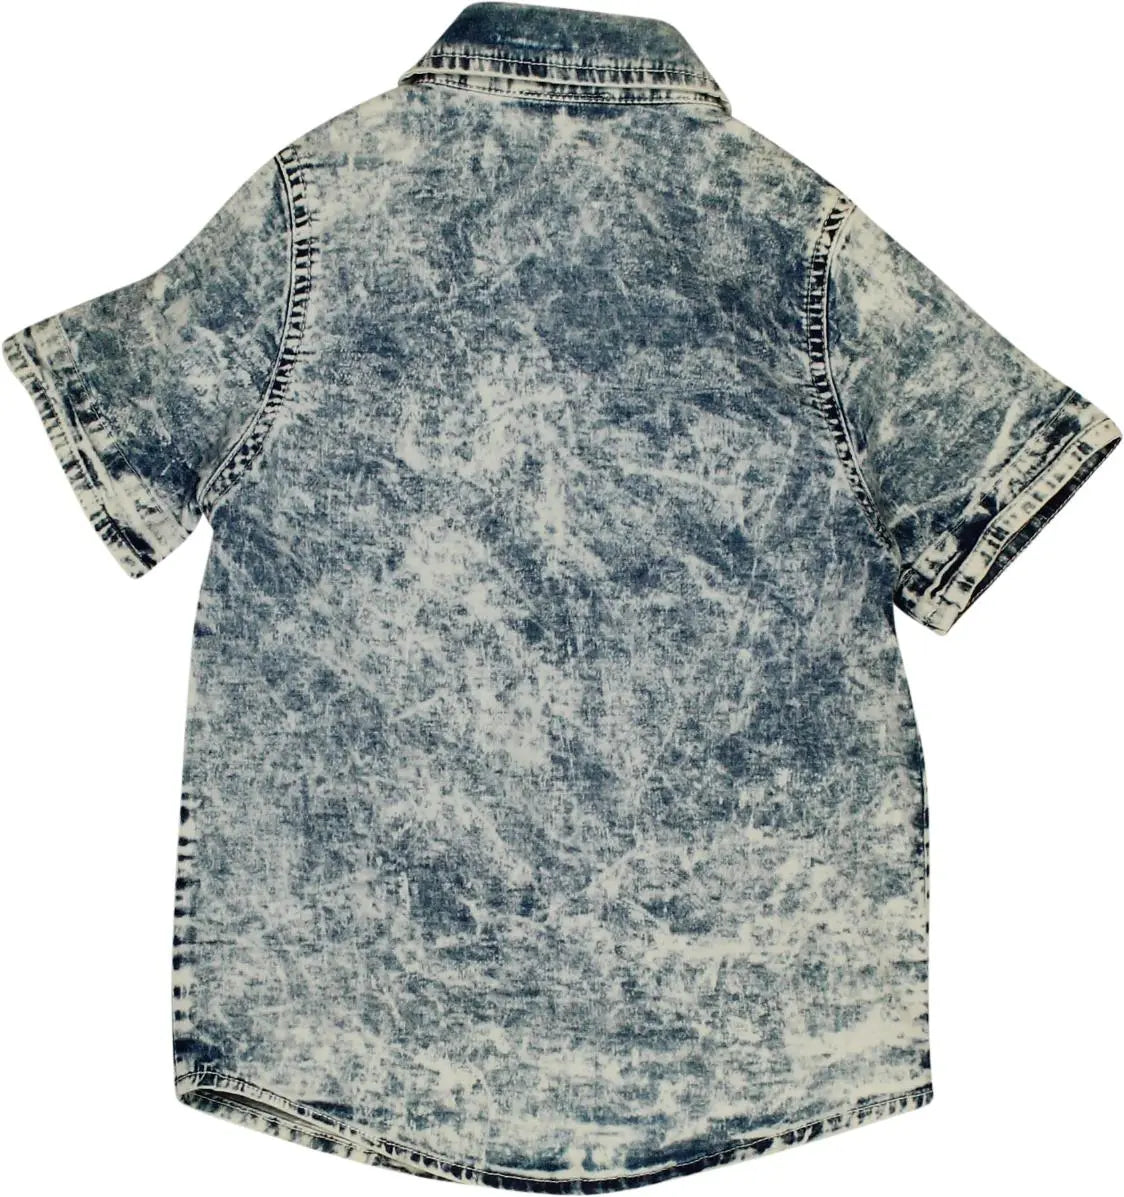 Rose Kids - Denim Short Sleeve Shirt- ThriftTale.com - Vintage and second handclothing